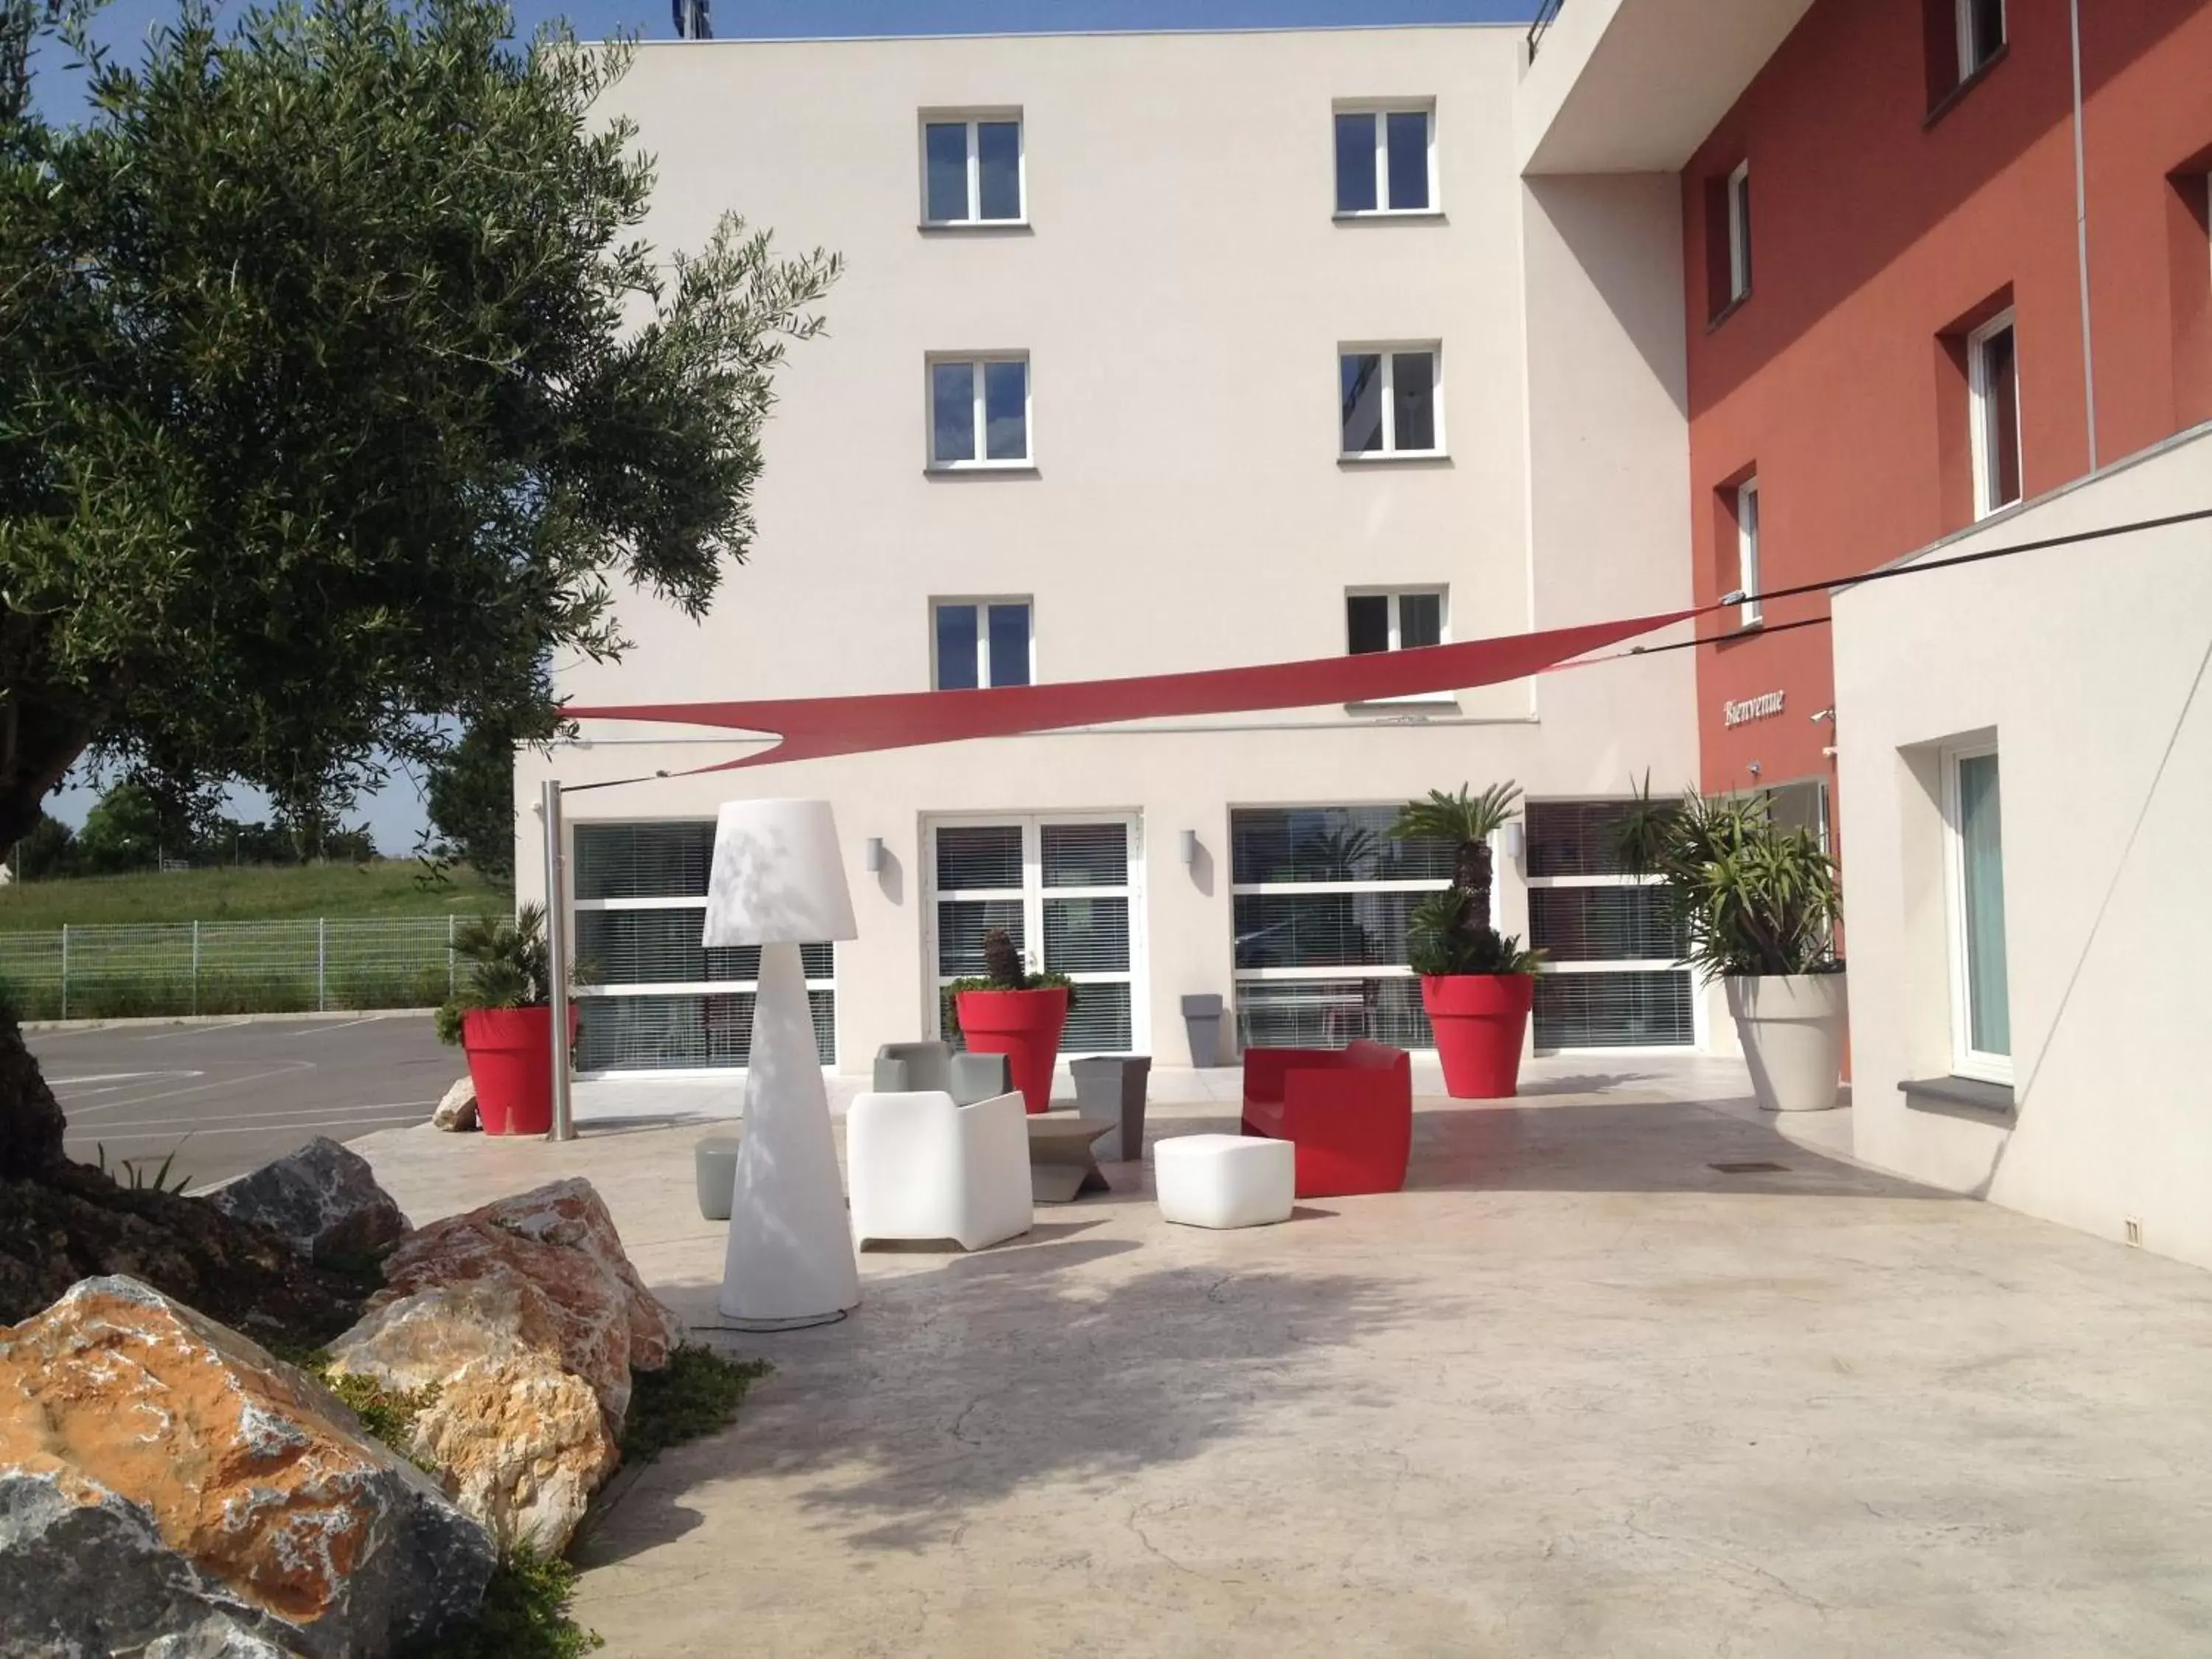 Facade/entrance, Property Building in Kyriad Perpignan Sud